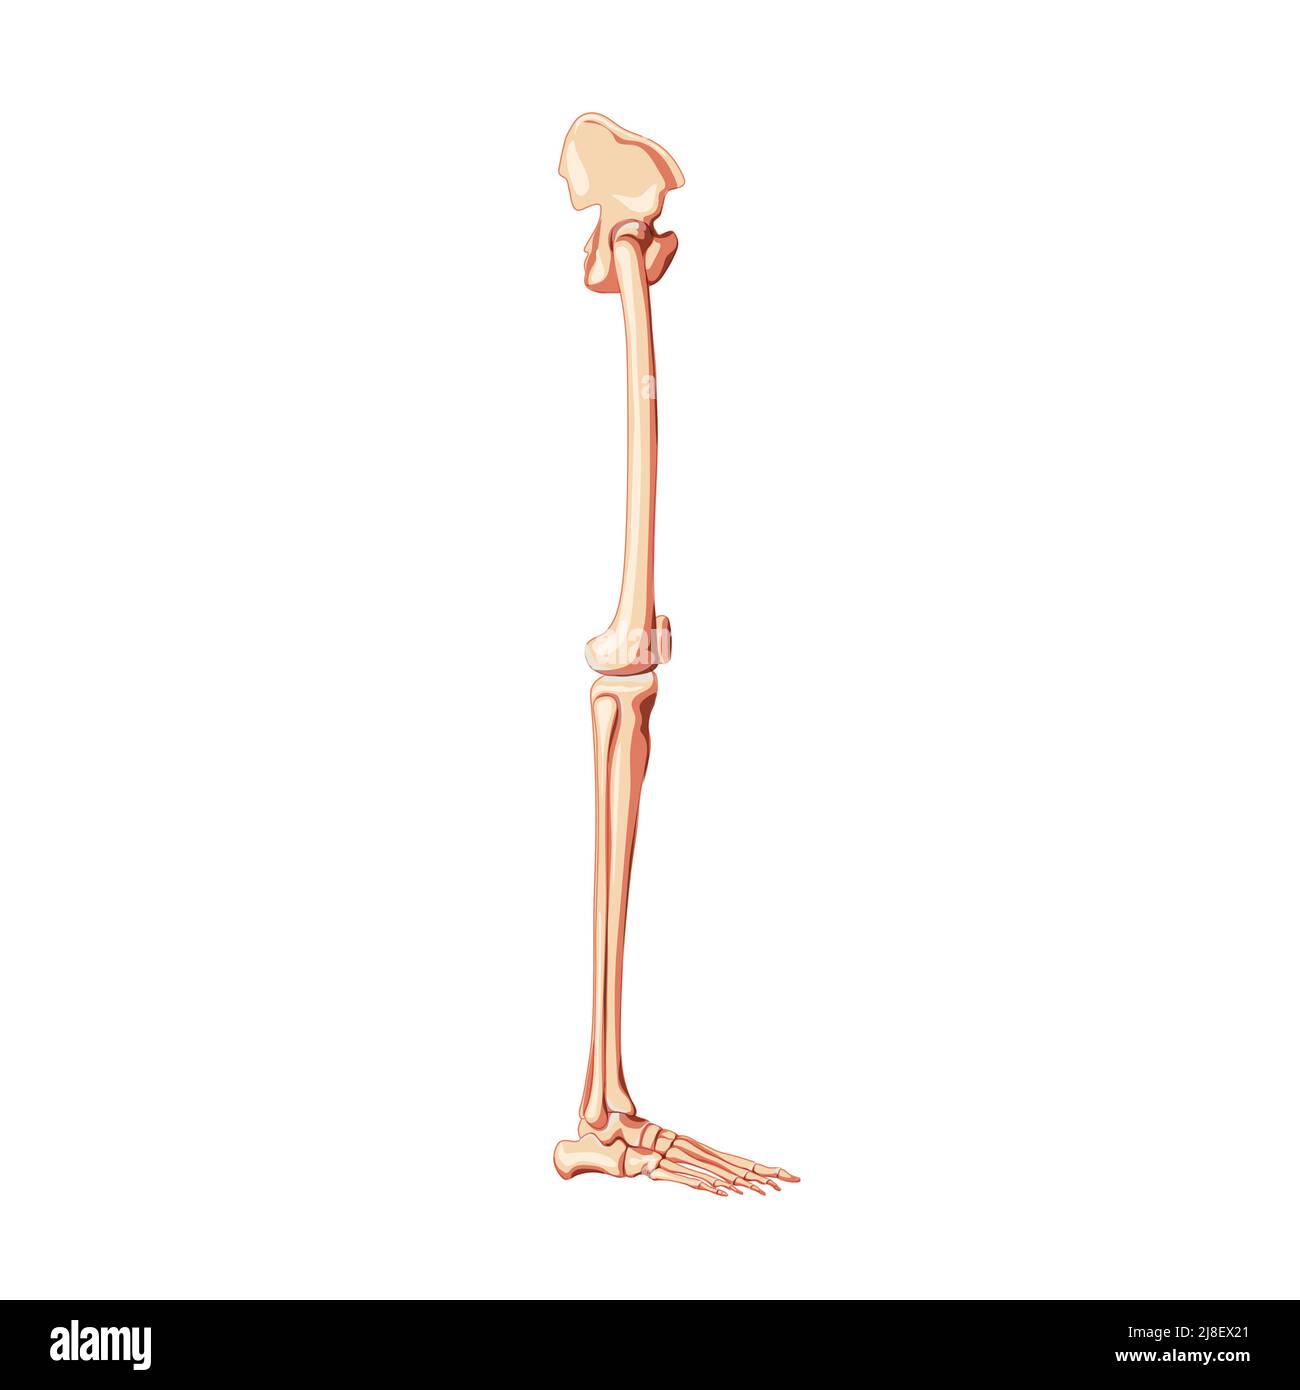 Pelvi umano con gambe Skeleton vista laterale con osso dell'anca, cosce, piede, femore, rotula, ginocchio, fibula. Correzione anatomica 3D concetto piatto realistico illustrazione vettoriale isolata su sfondo bianco Illustrazione Vettoriale